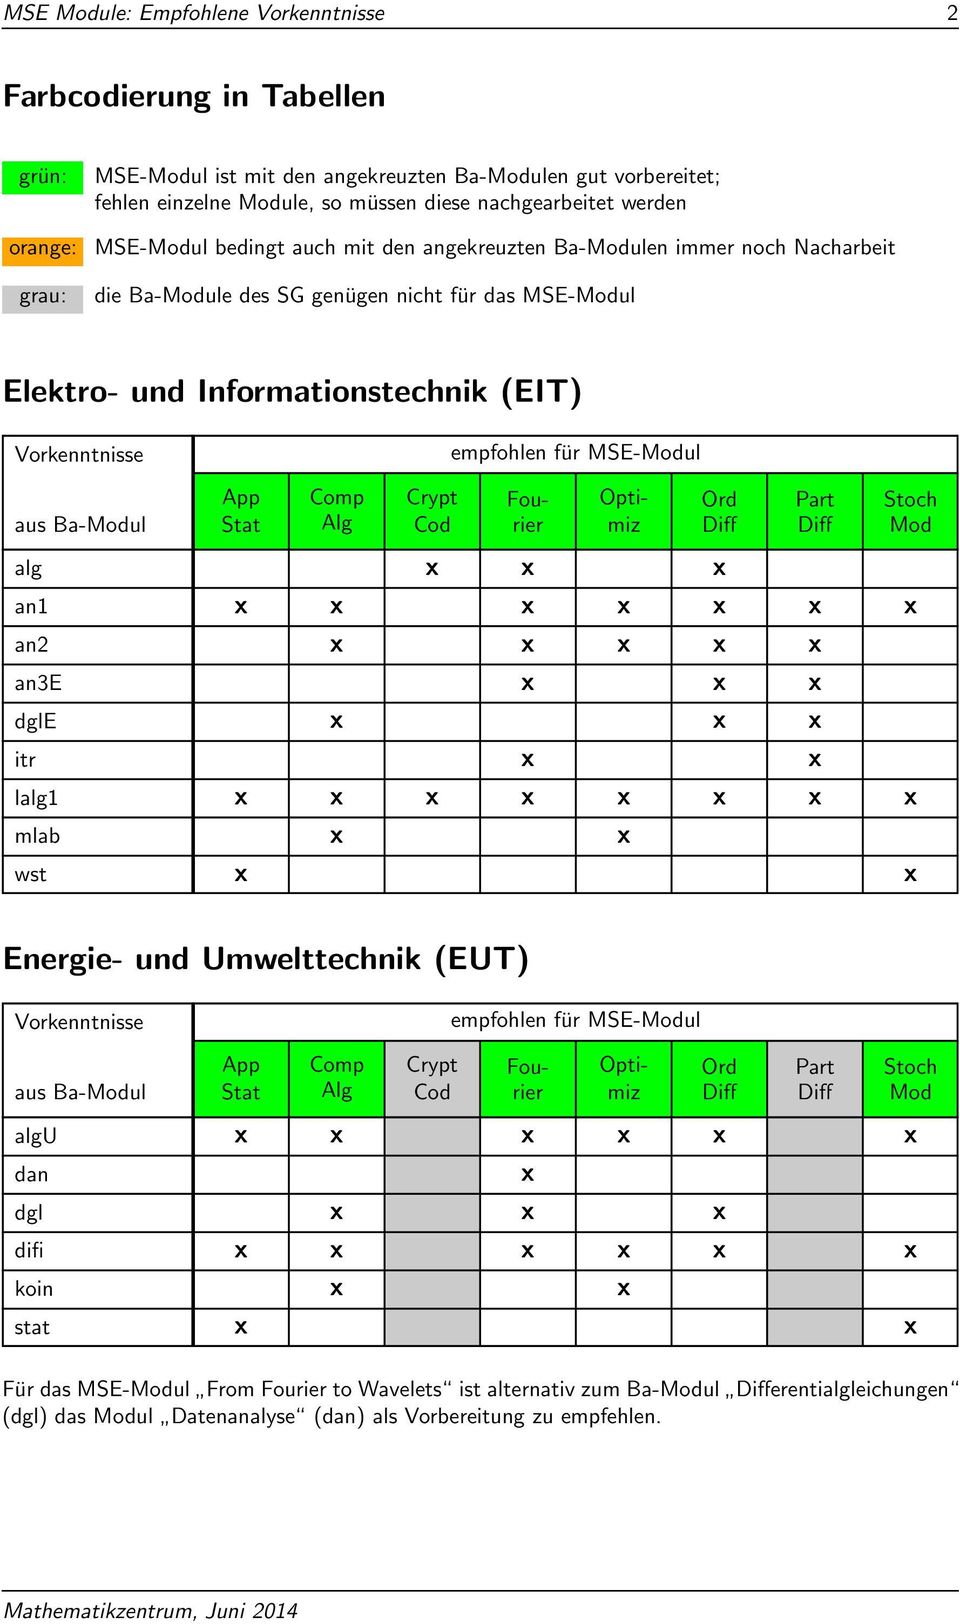 genügen nicht für das MSE-ul Elektro- und Informationstechnik (EIT) alg an3e dgle itr mlab Energie- und Umwelttechnik (EUT) algu dgl difi